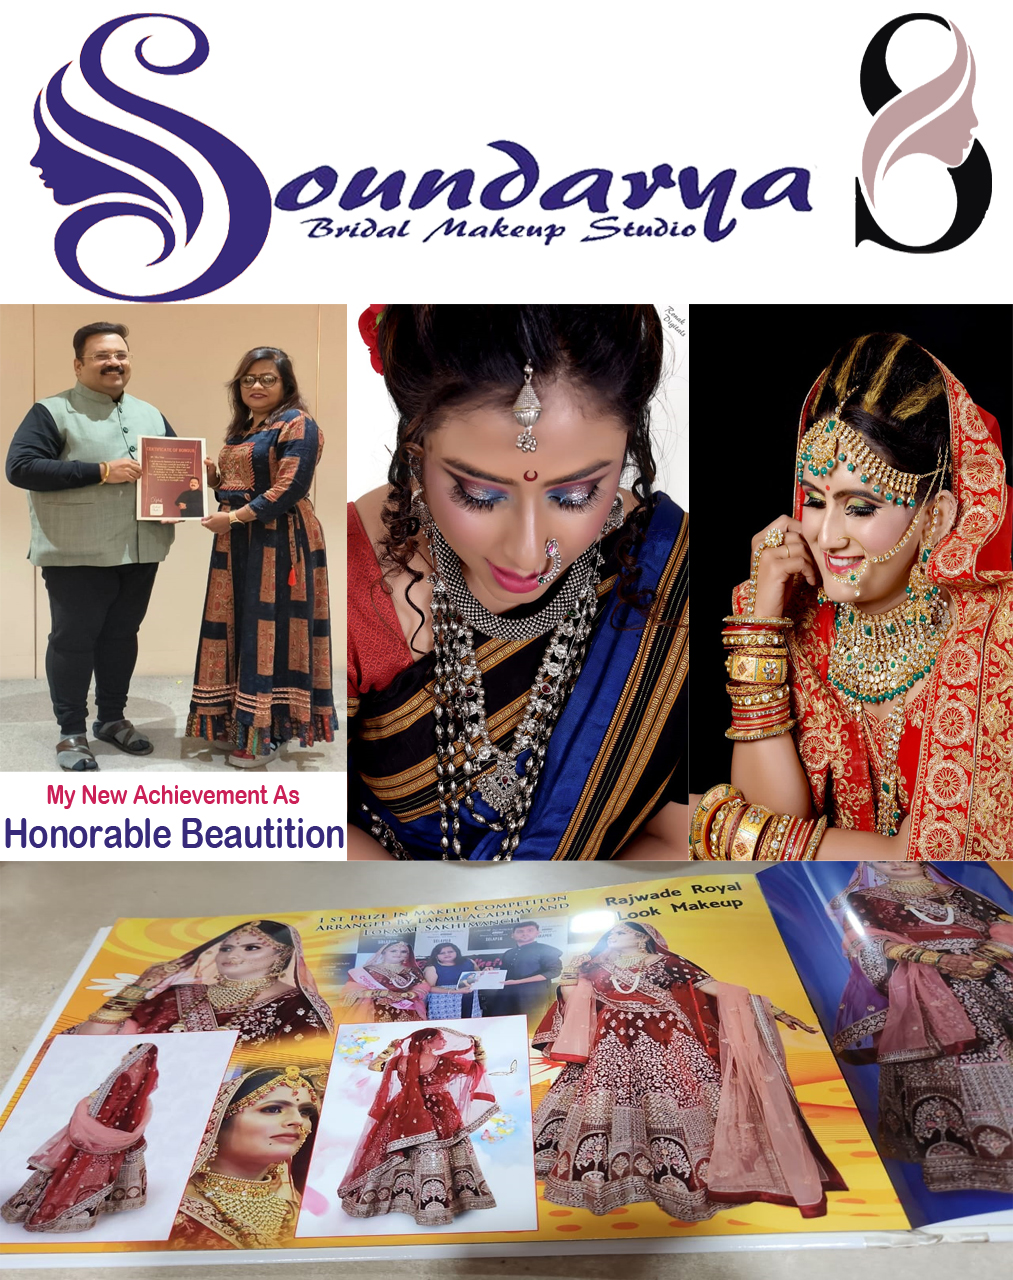 Soundrya Beauty Clinic and Tranining Center | SolapurMall.com